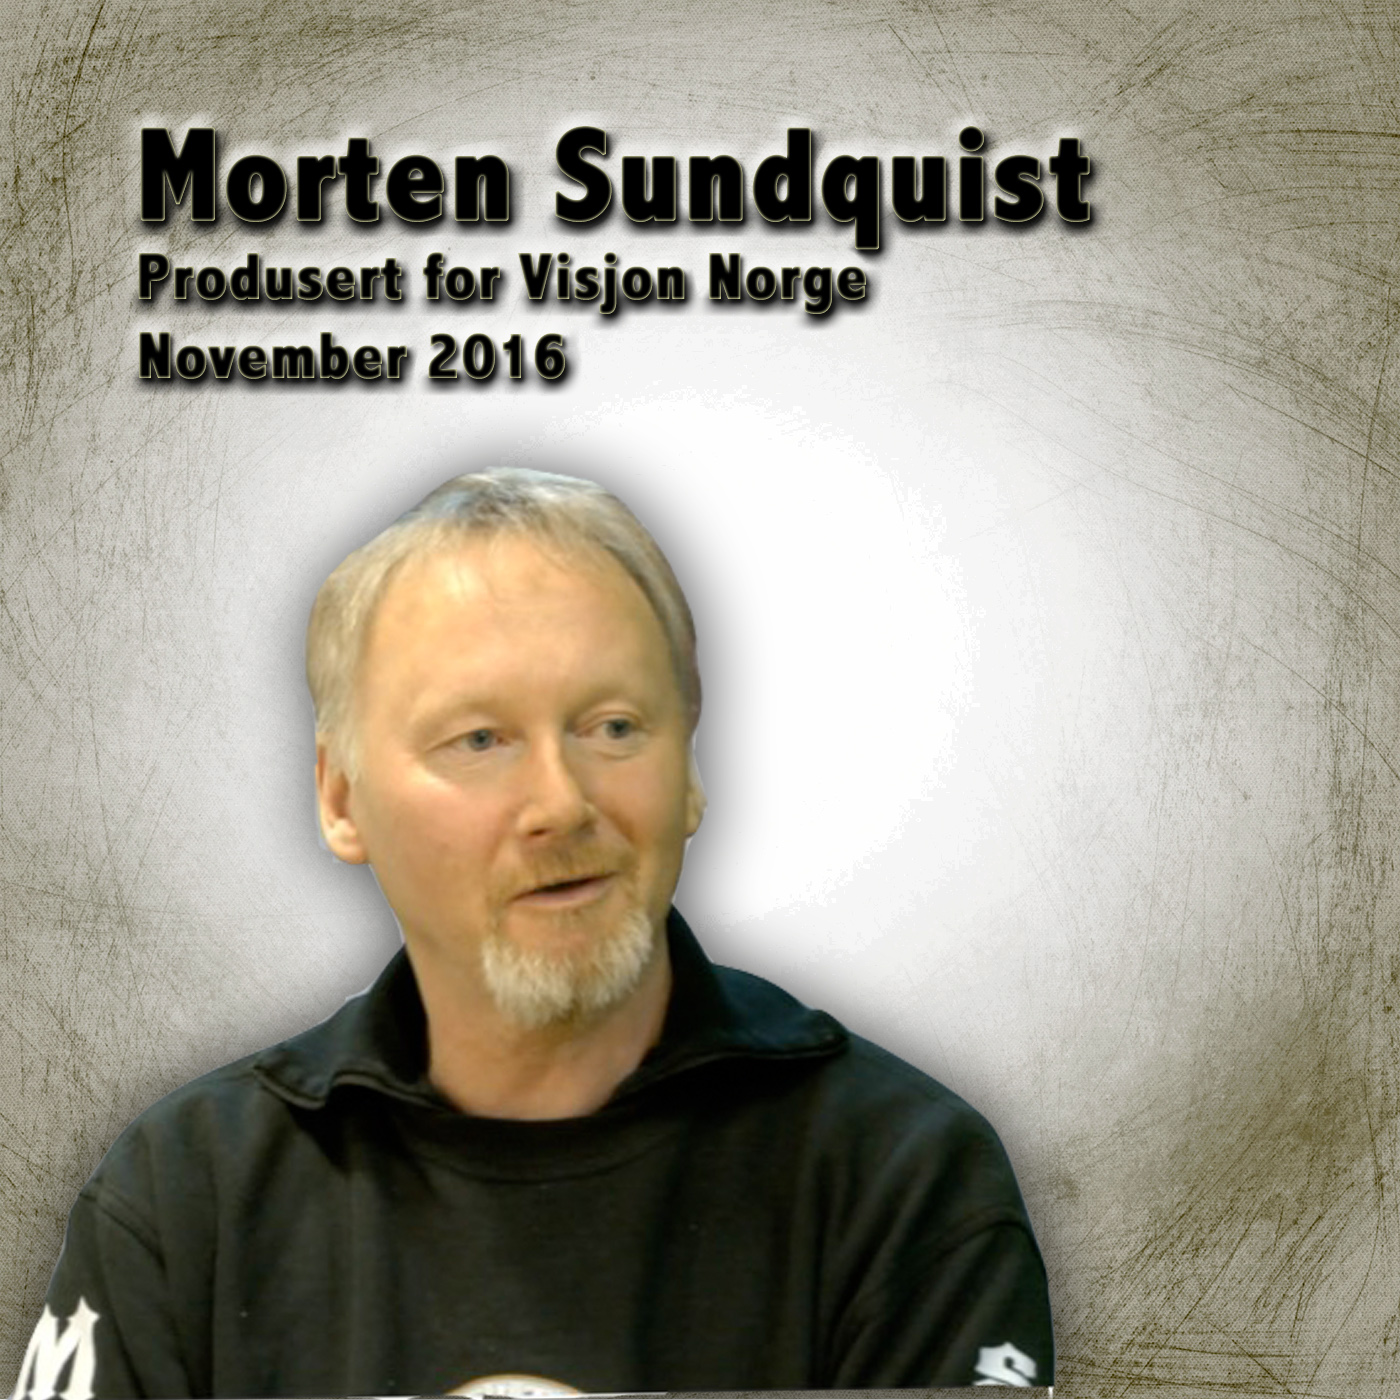 Morten Sundquist